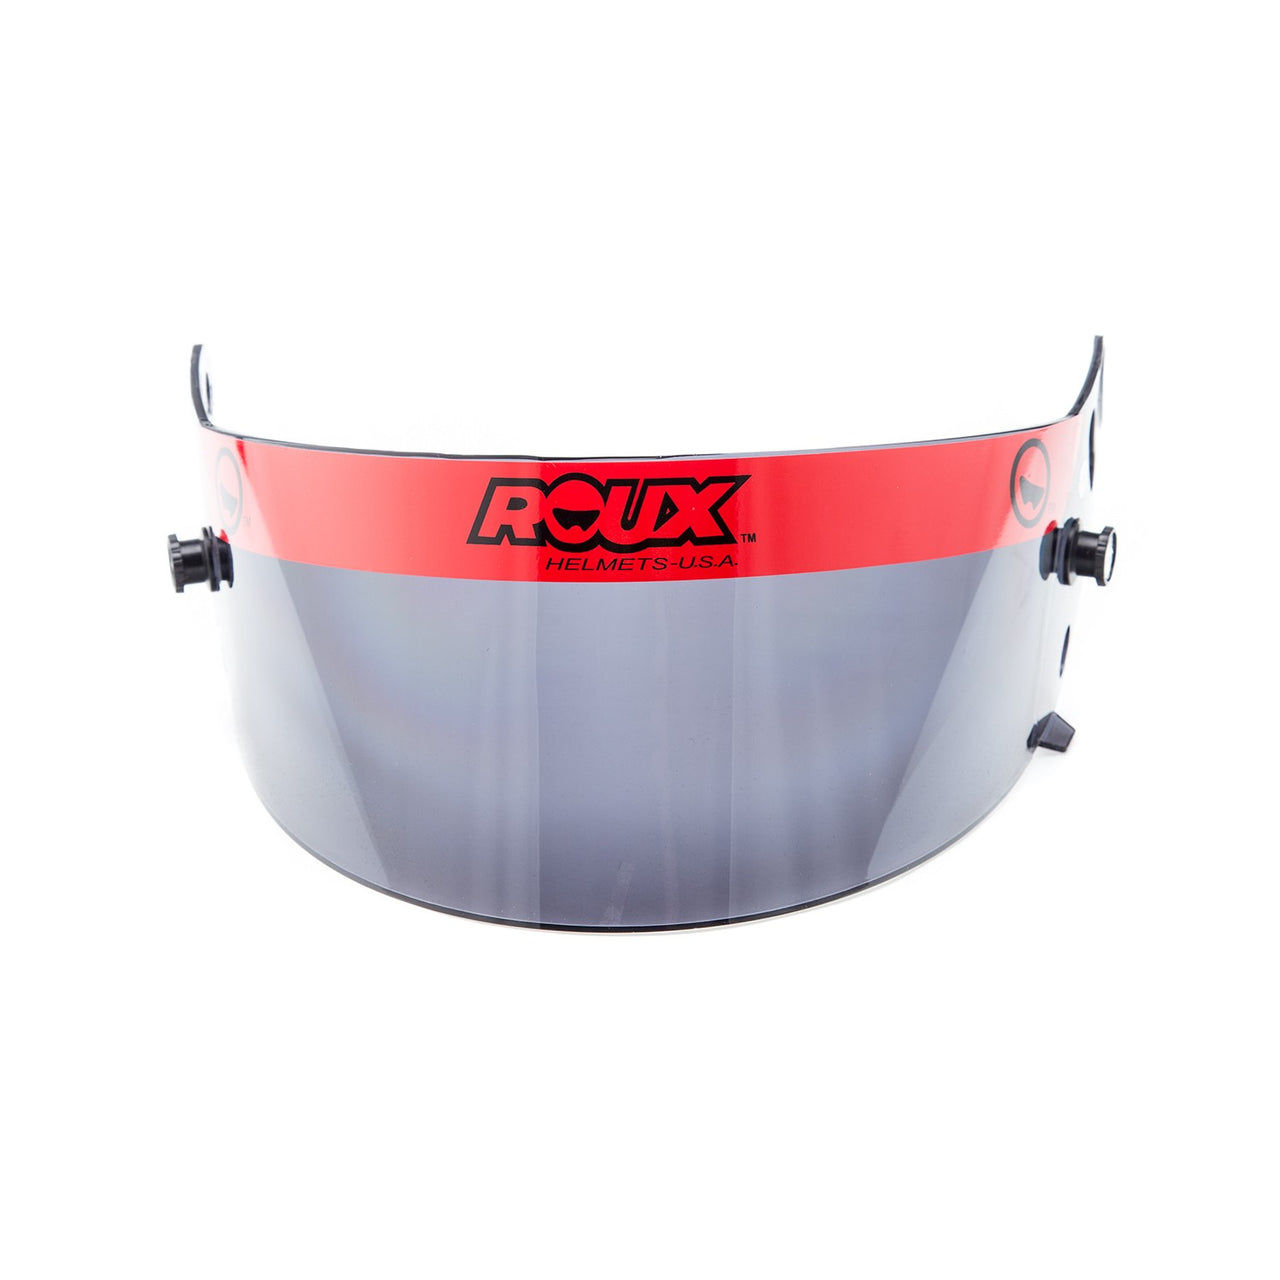 Roux Dark Smoke Shield, Fits Roux R-1 Helmets | Roux RXHS05-15555